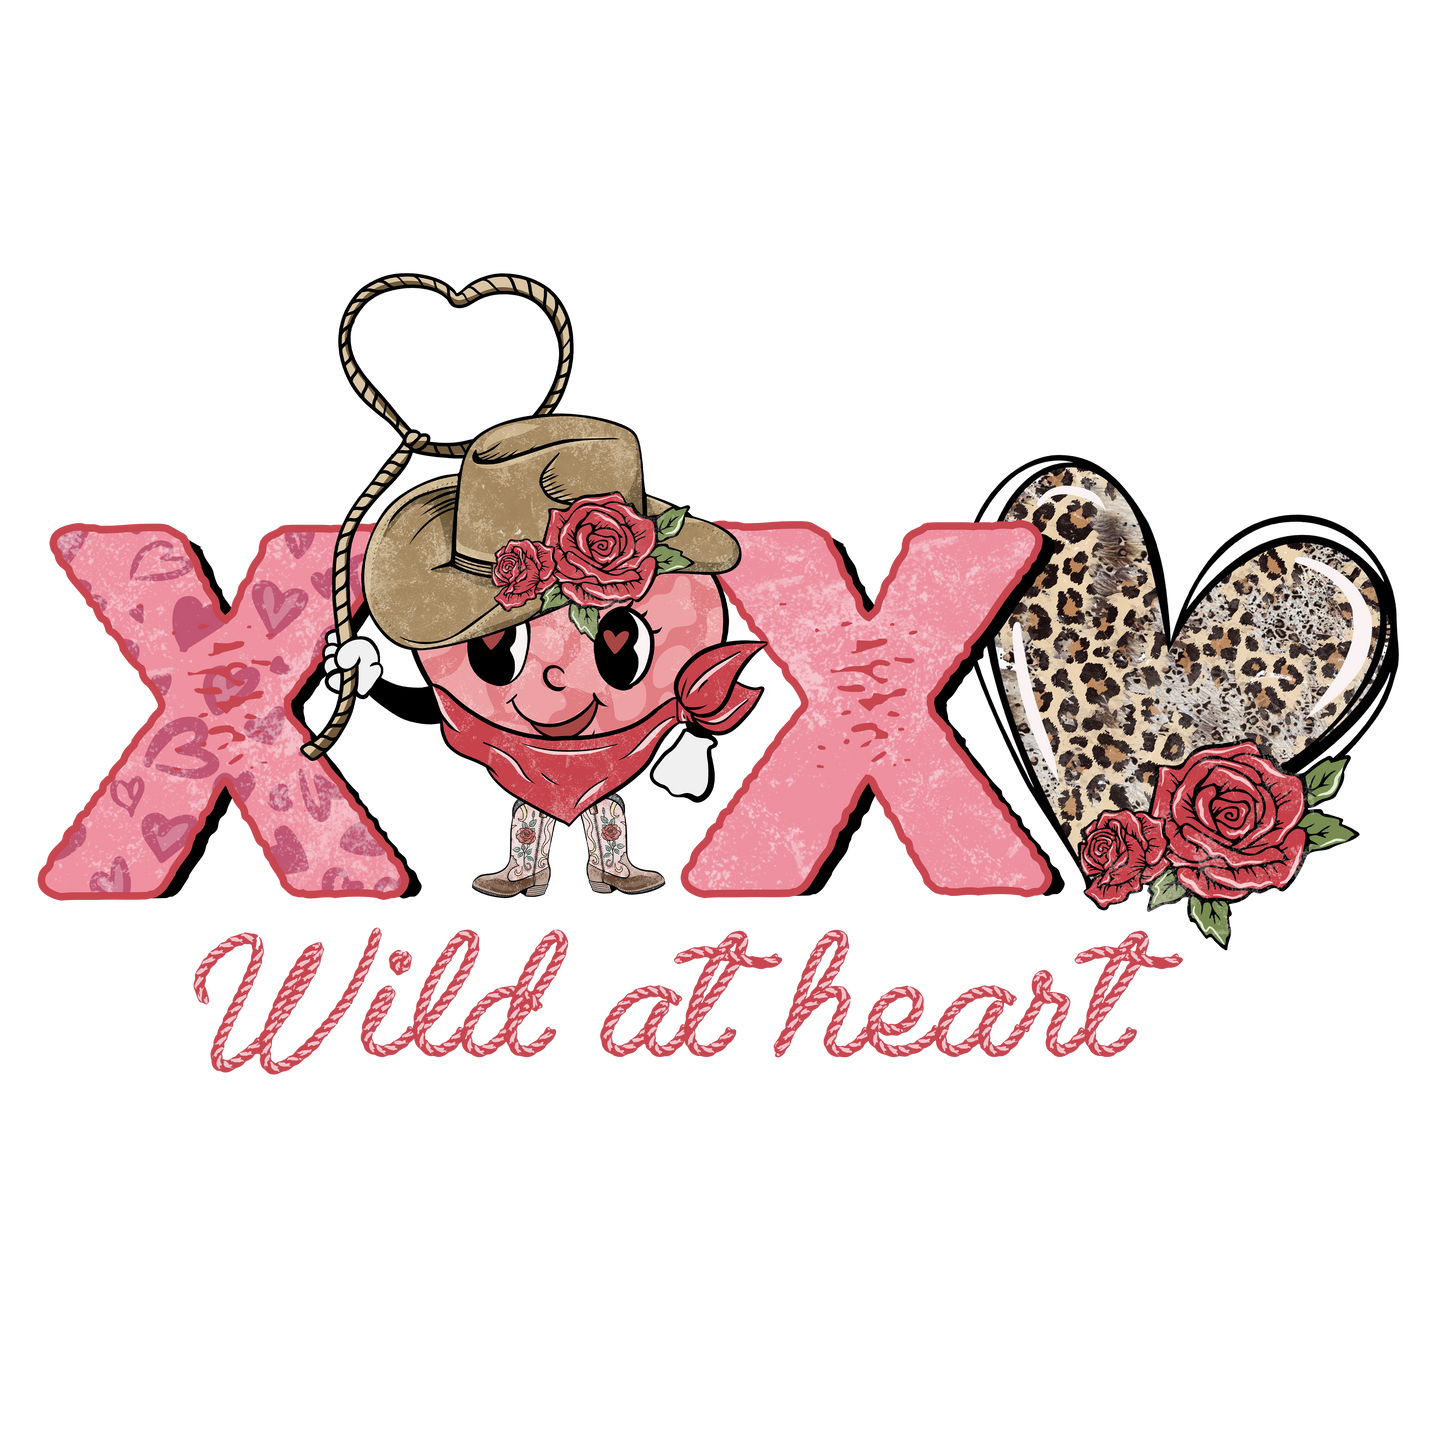 XOXO Wild at heart